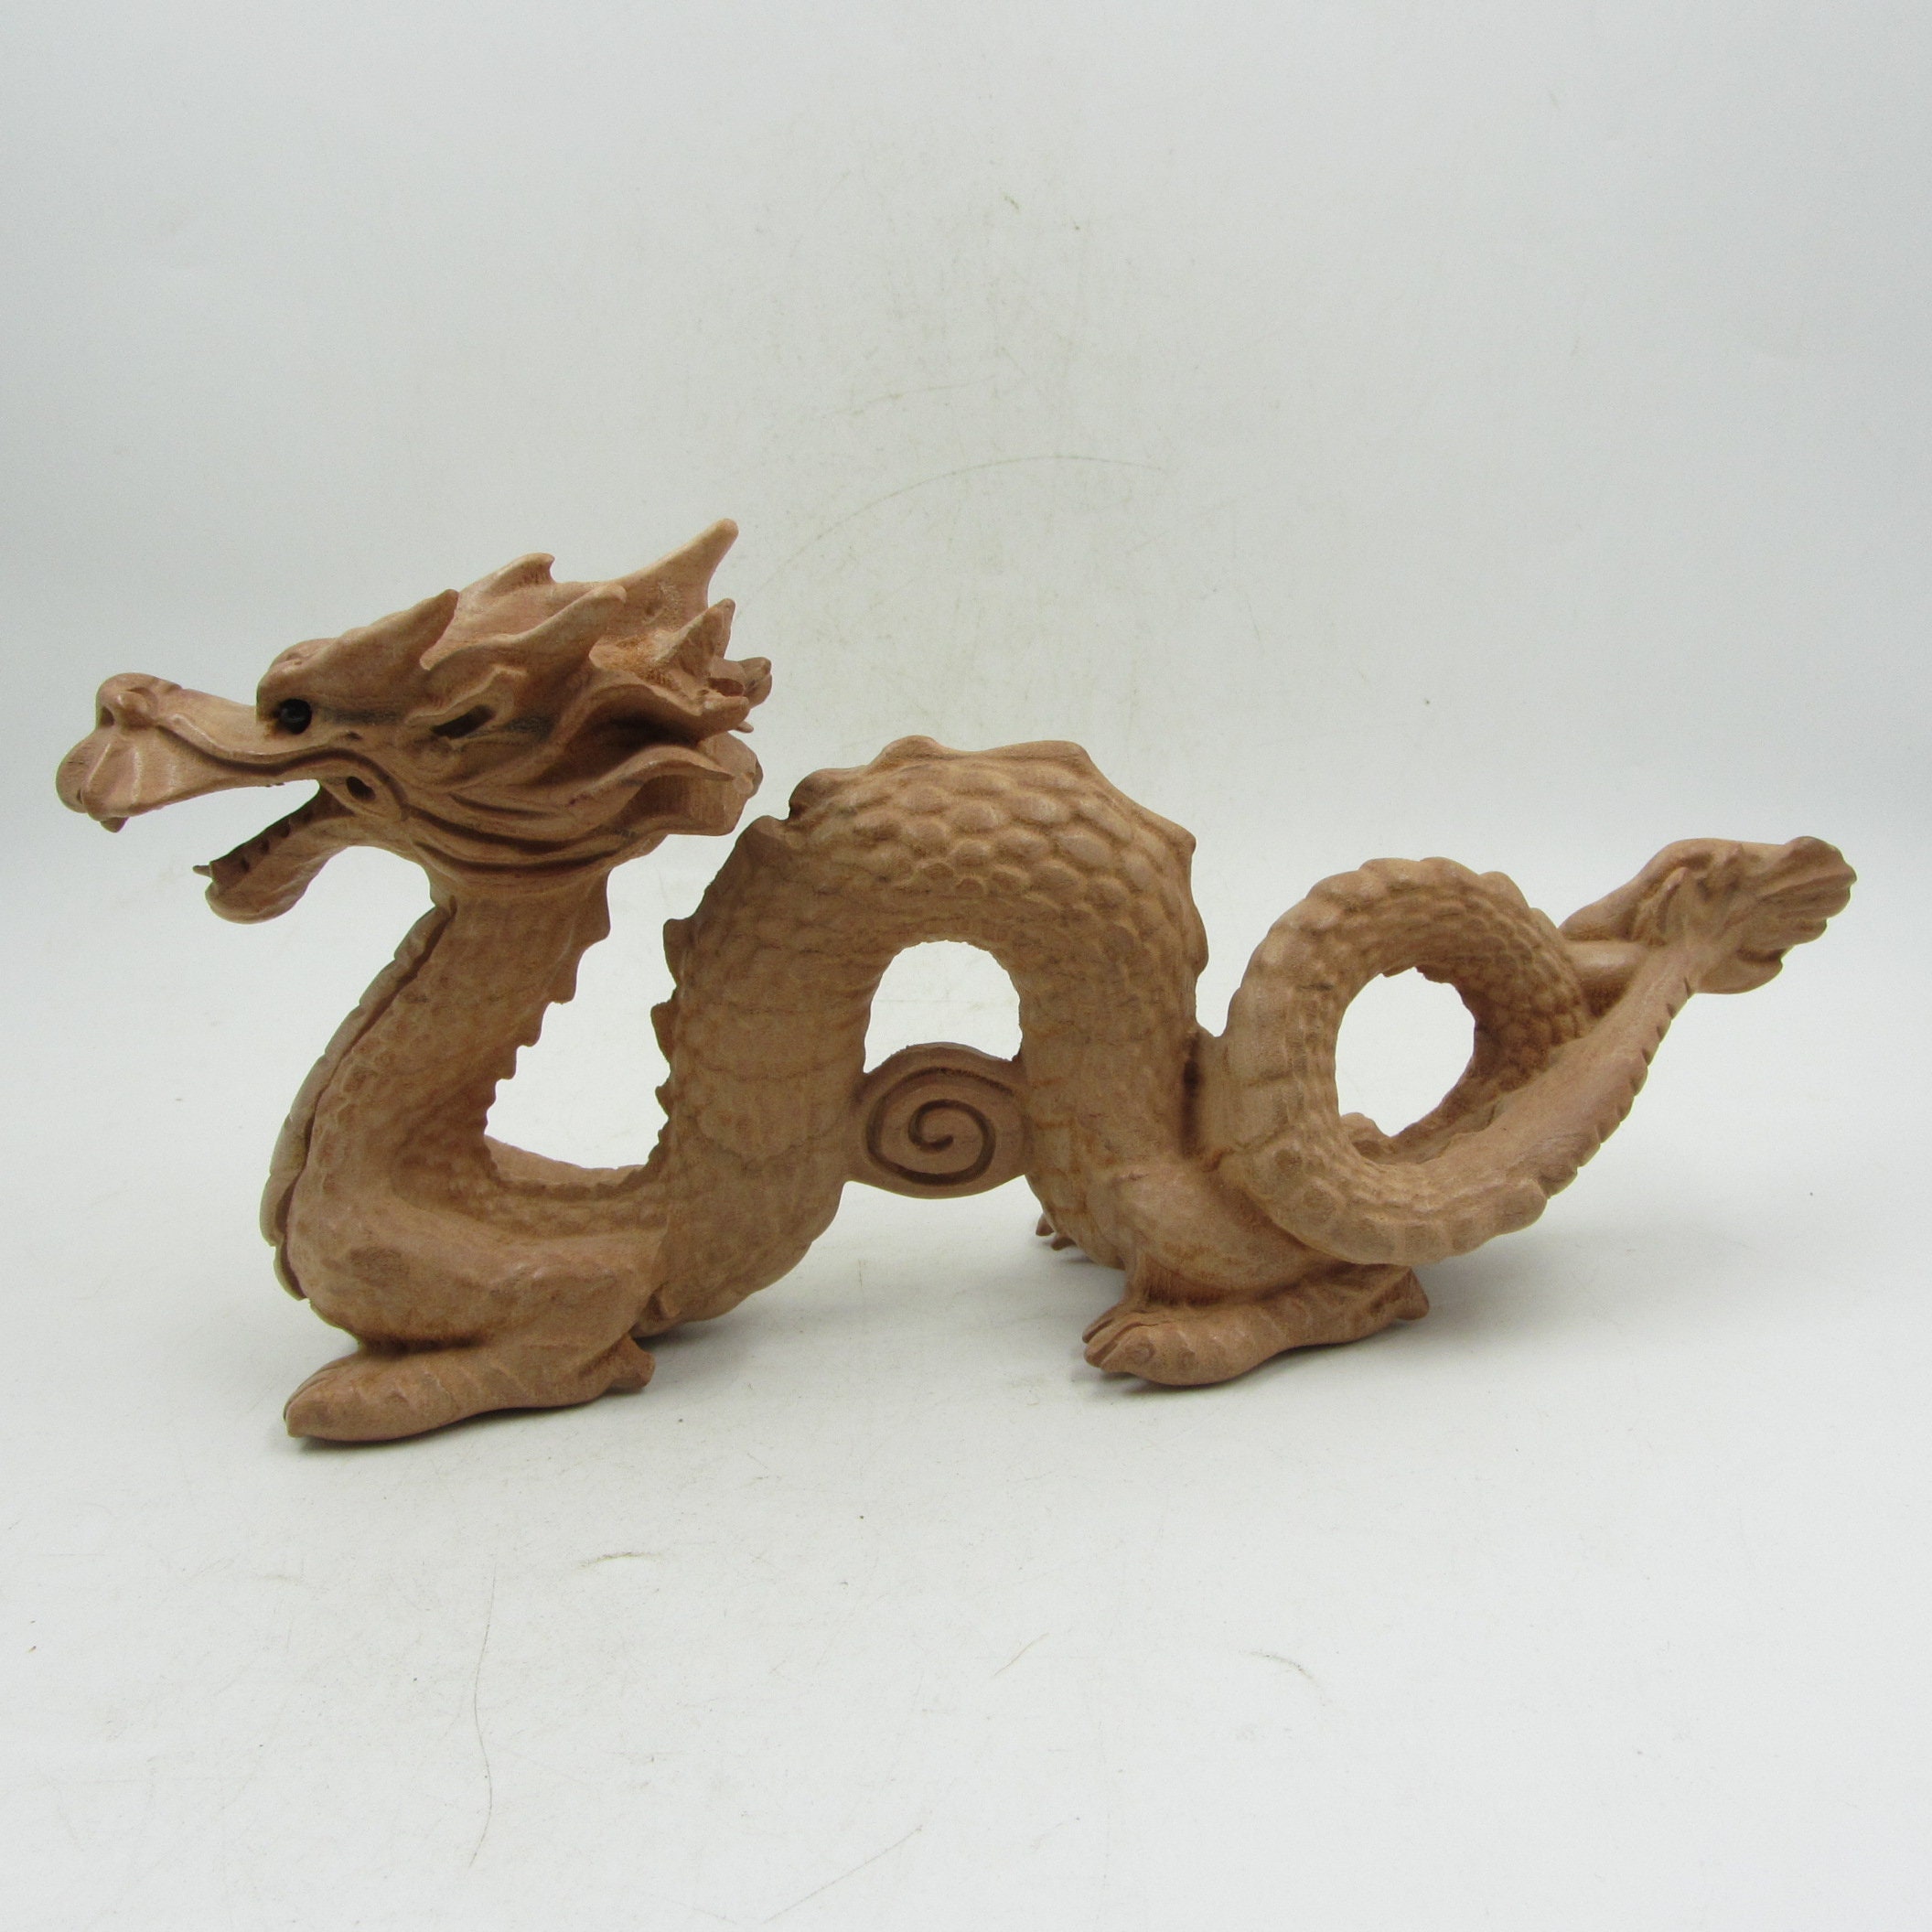 Peach wood dragon decoration, dragon wood zodiac mascot, peach wood  handicraft, wooden dragon, wood dragon, green dragon